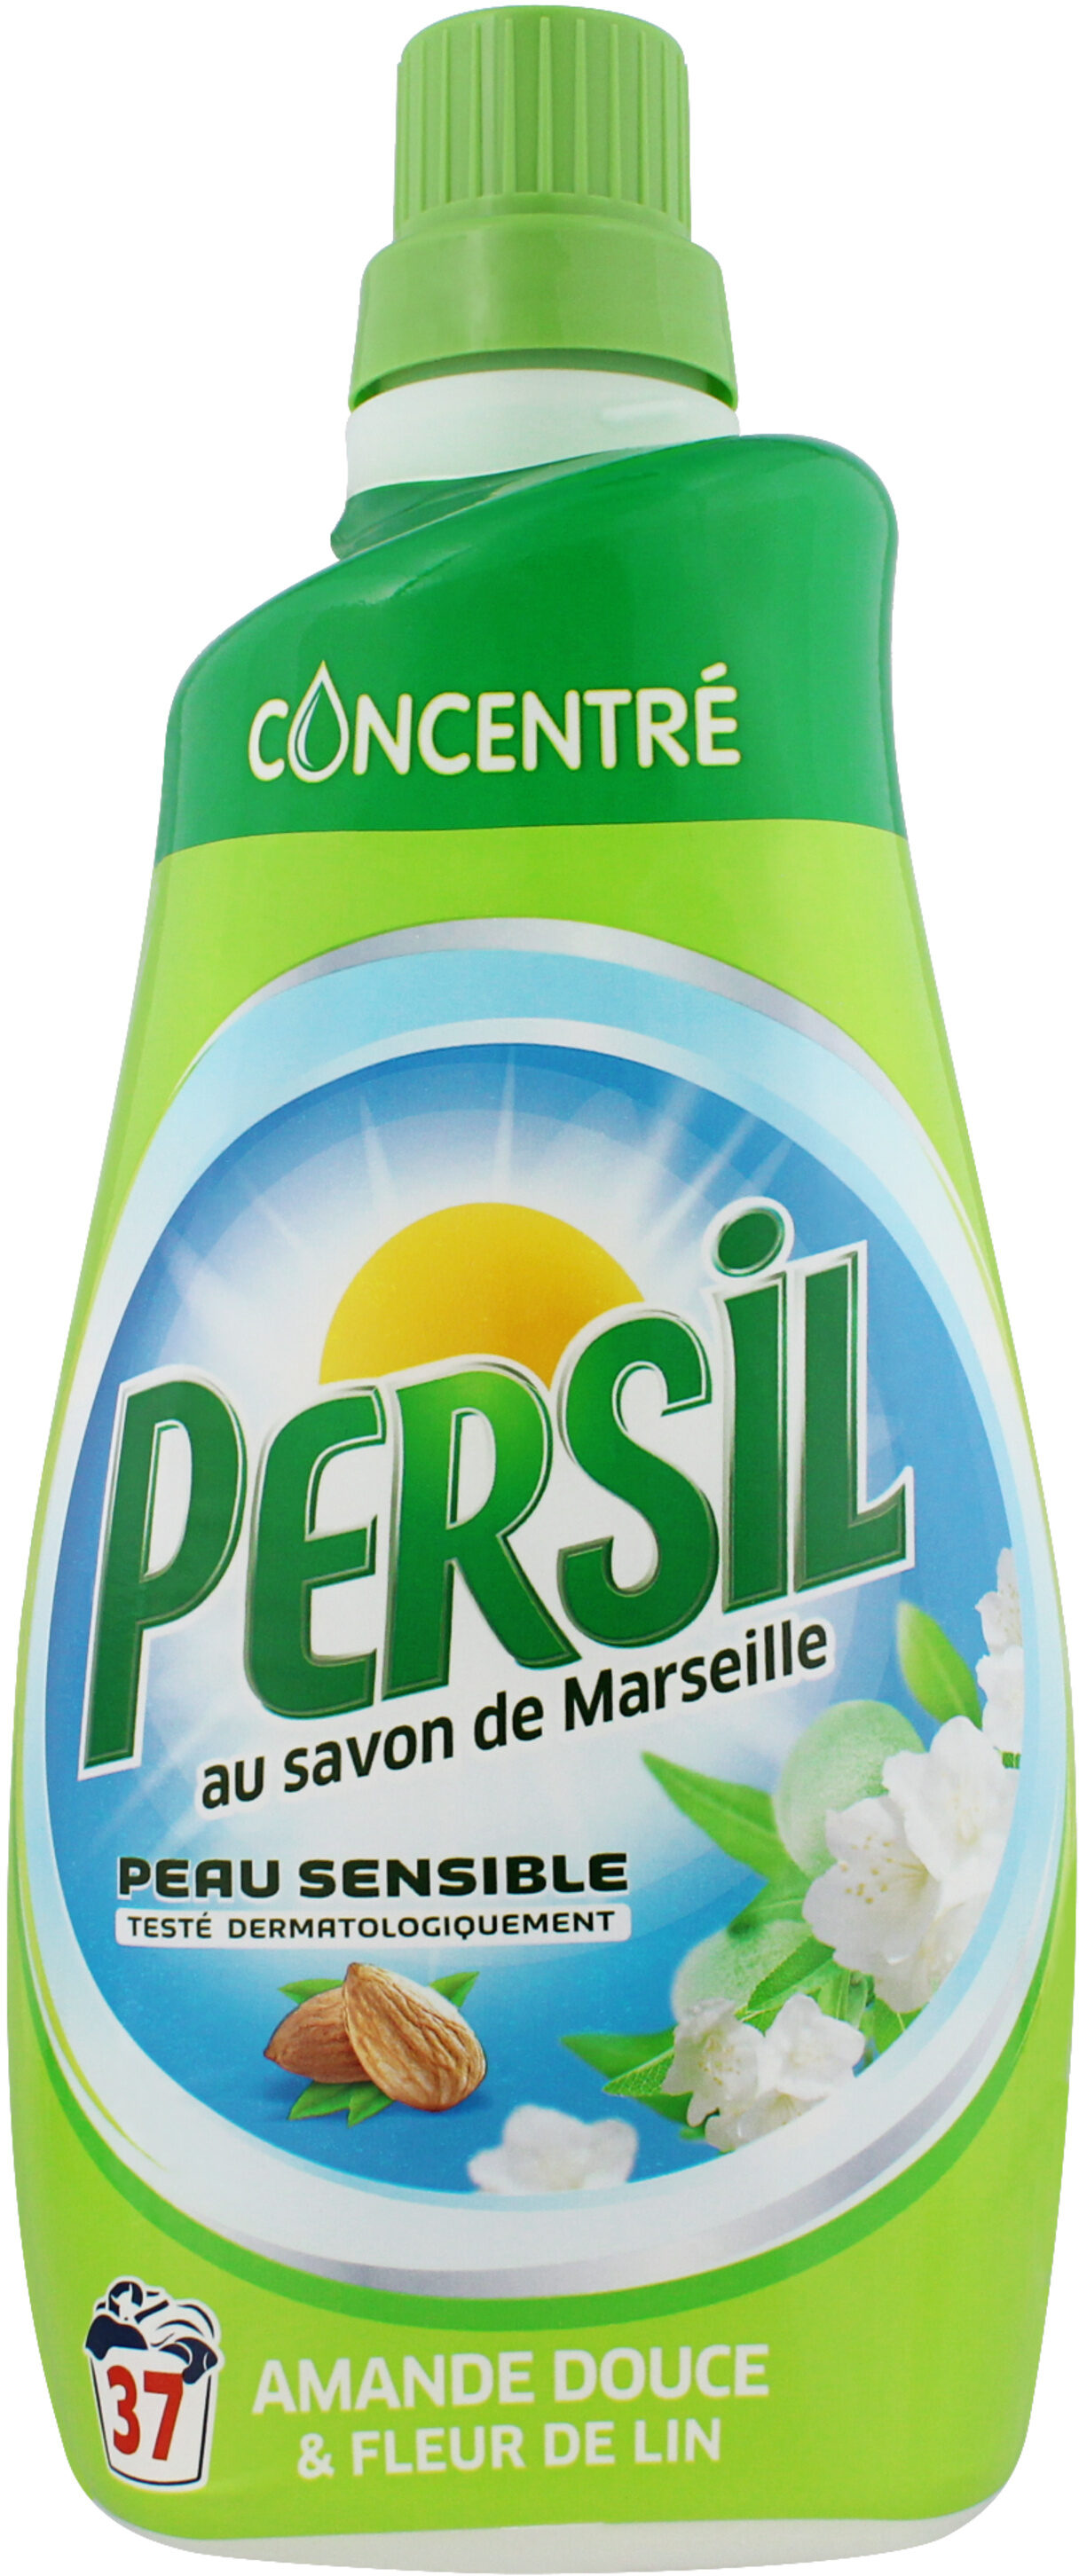 Persil Lessive Liquide Amande Douce 2l 40 Lavages Lot de 3 - 6000 ml